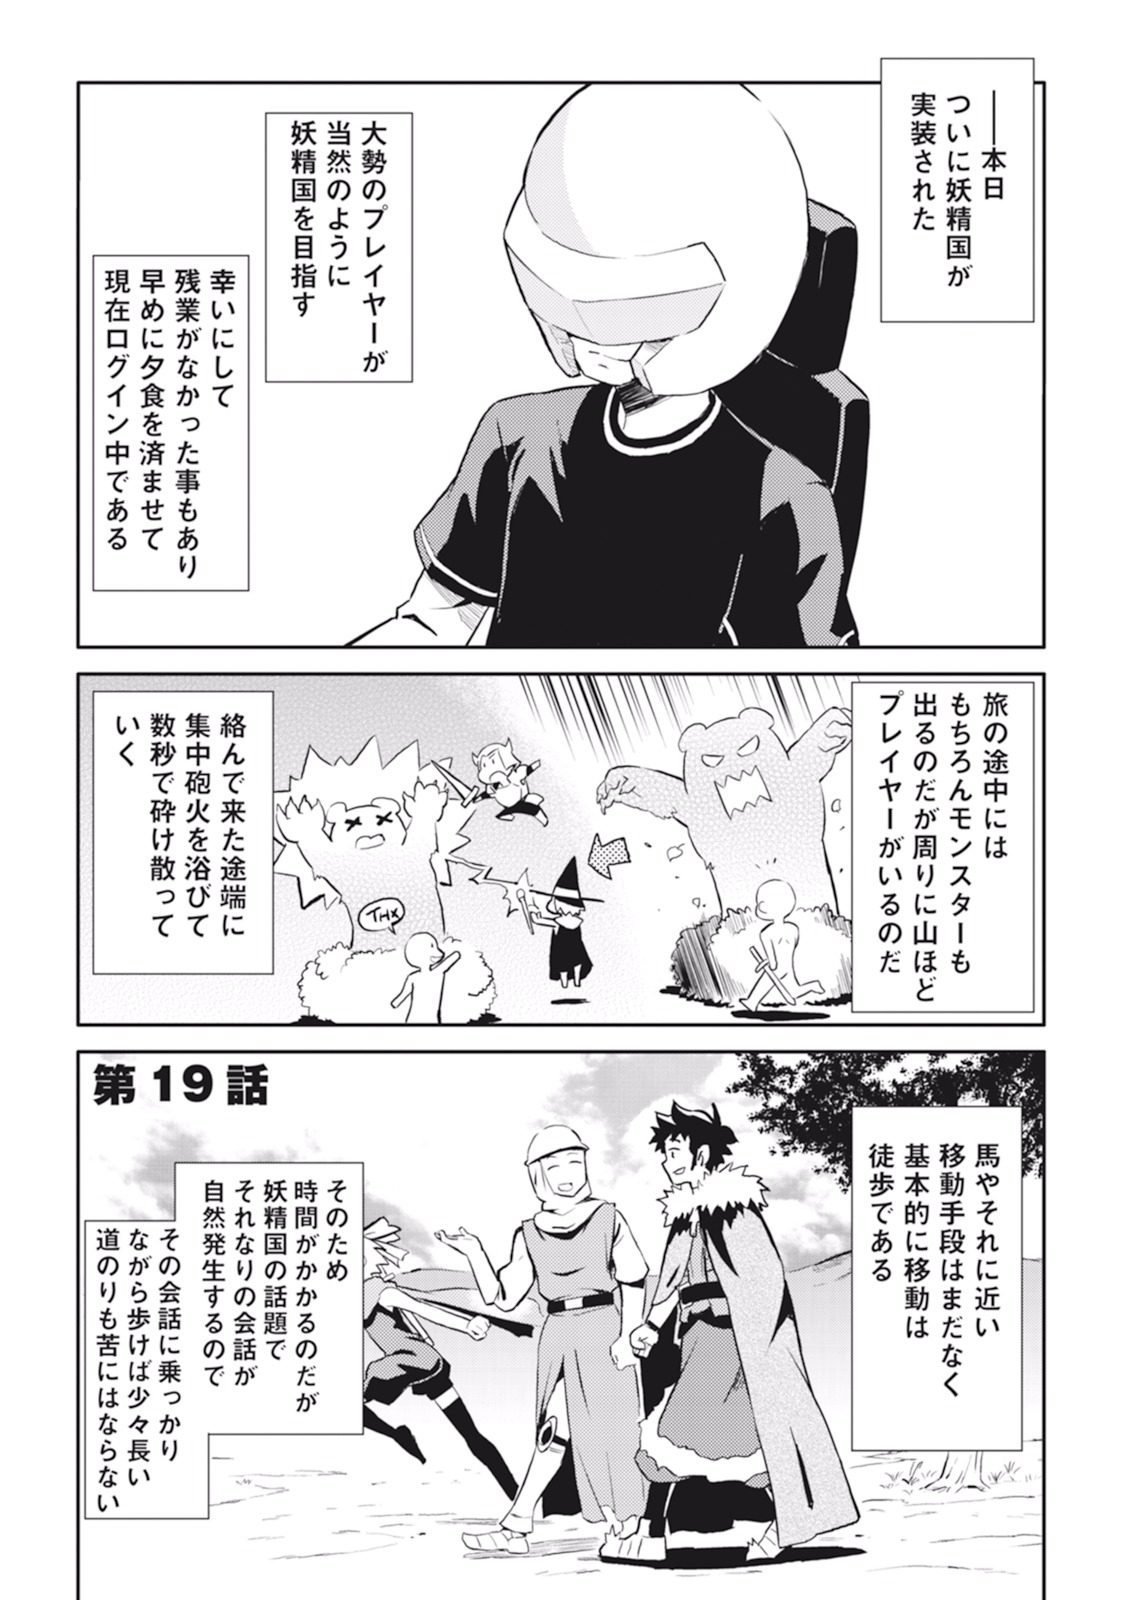 Toaru Ossan no VRMMO Katsudouki - Chapter 19 - Page 1